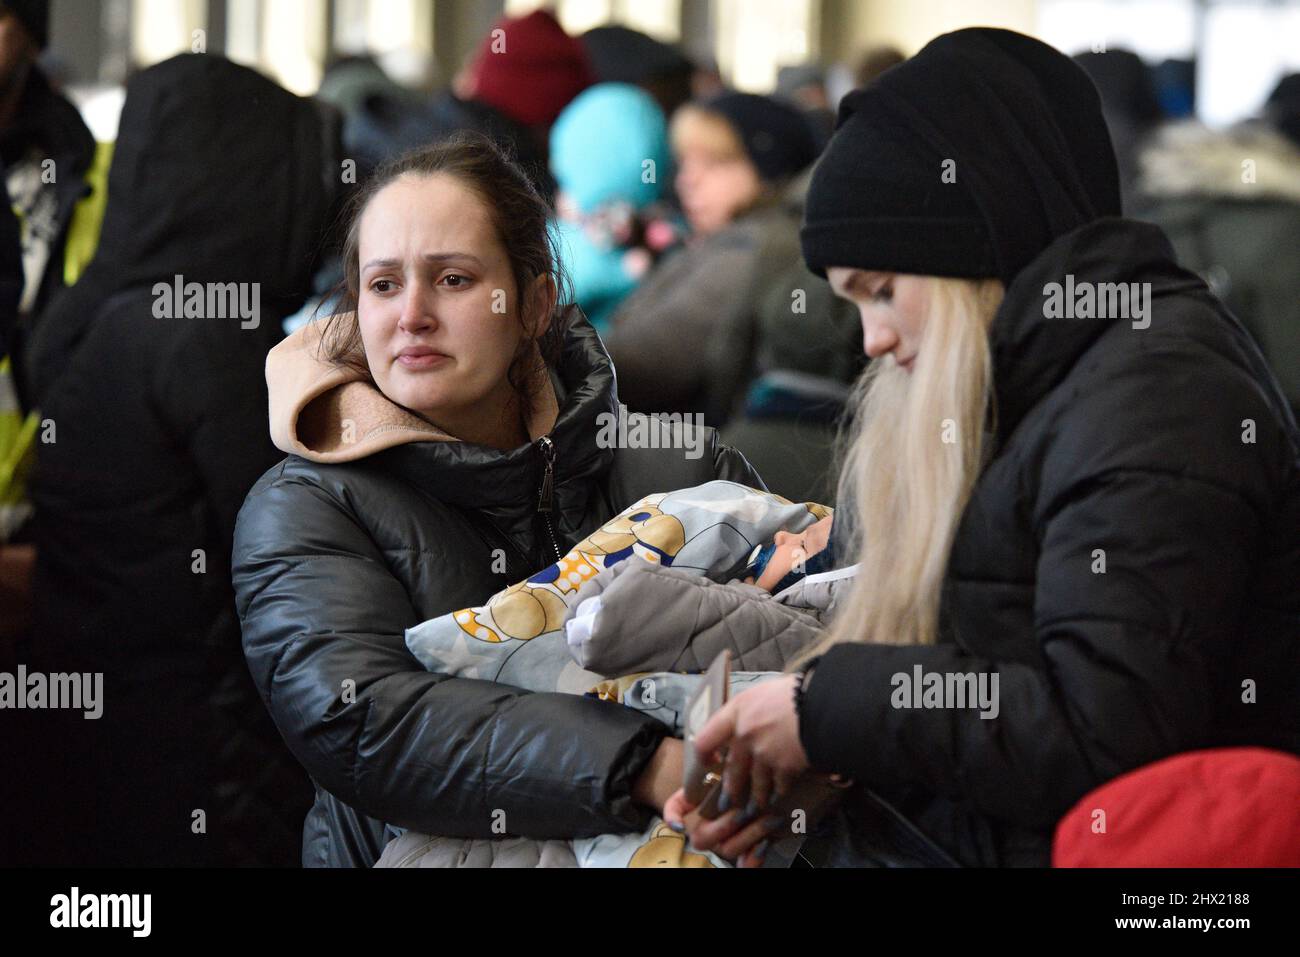 LVIV, UKRAINE - 28. FEBRUAR 2022 - Eine Frau hält am Bahnhof von Lviv ein Baby, als Flüchtlinge vor Feindseligkeiten in Evakuierungszügen nach Polen einsteigen Stockfoto